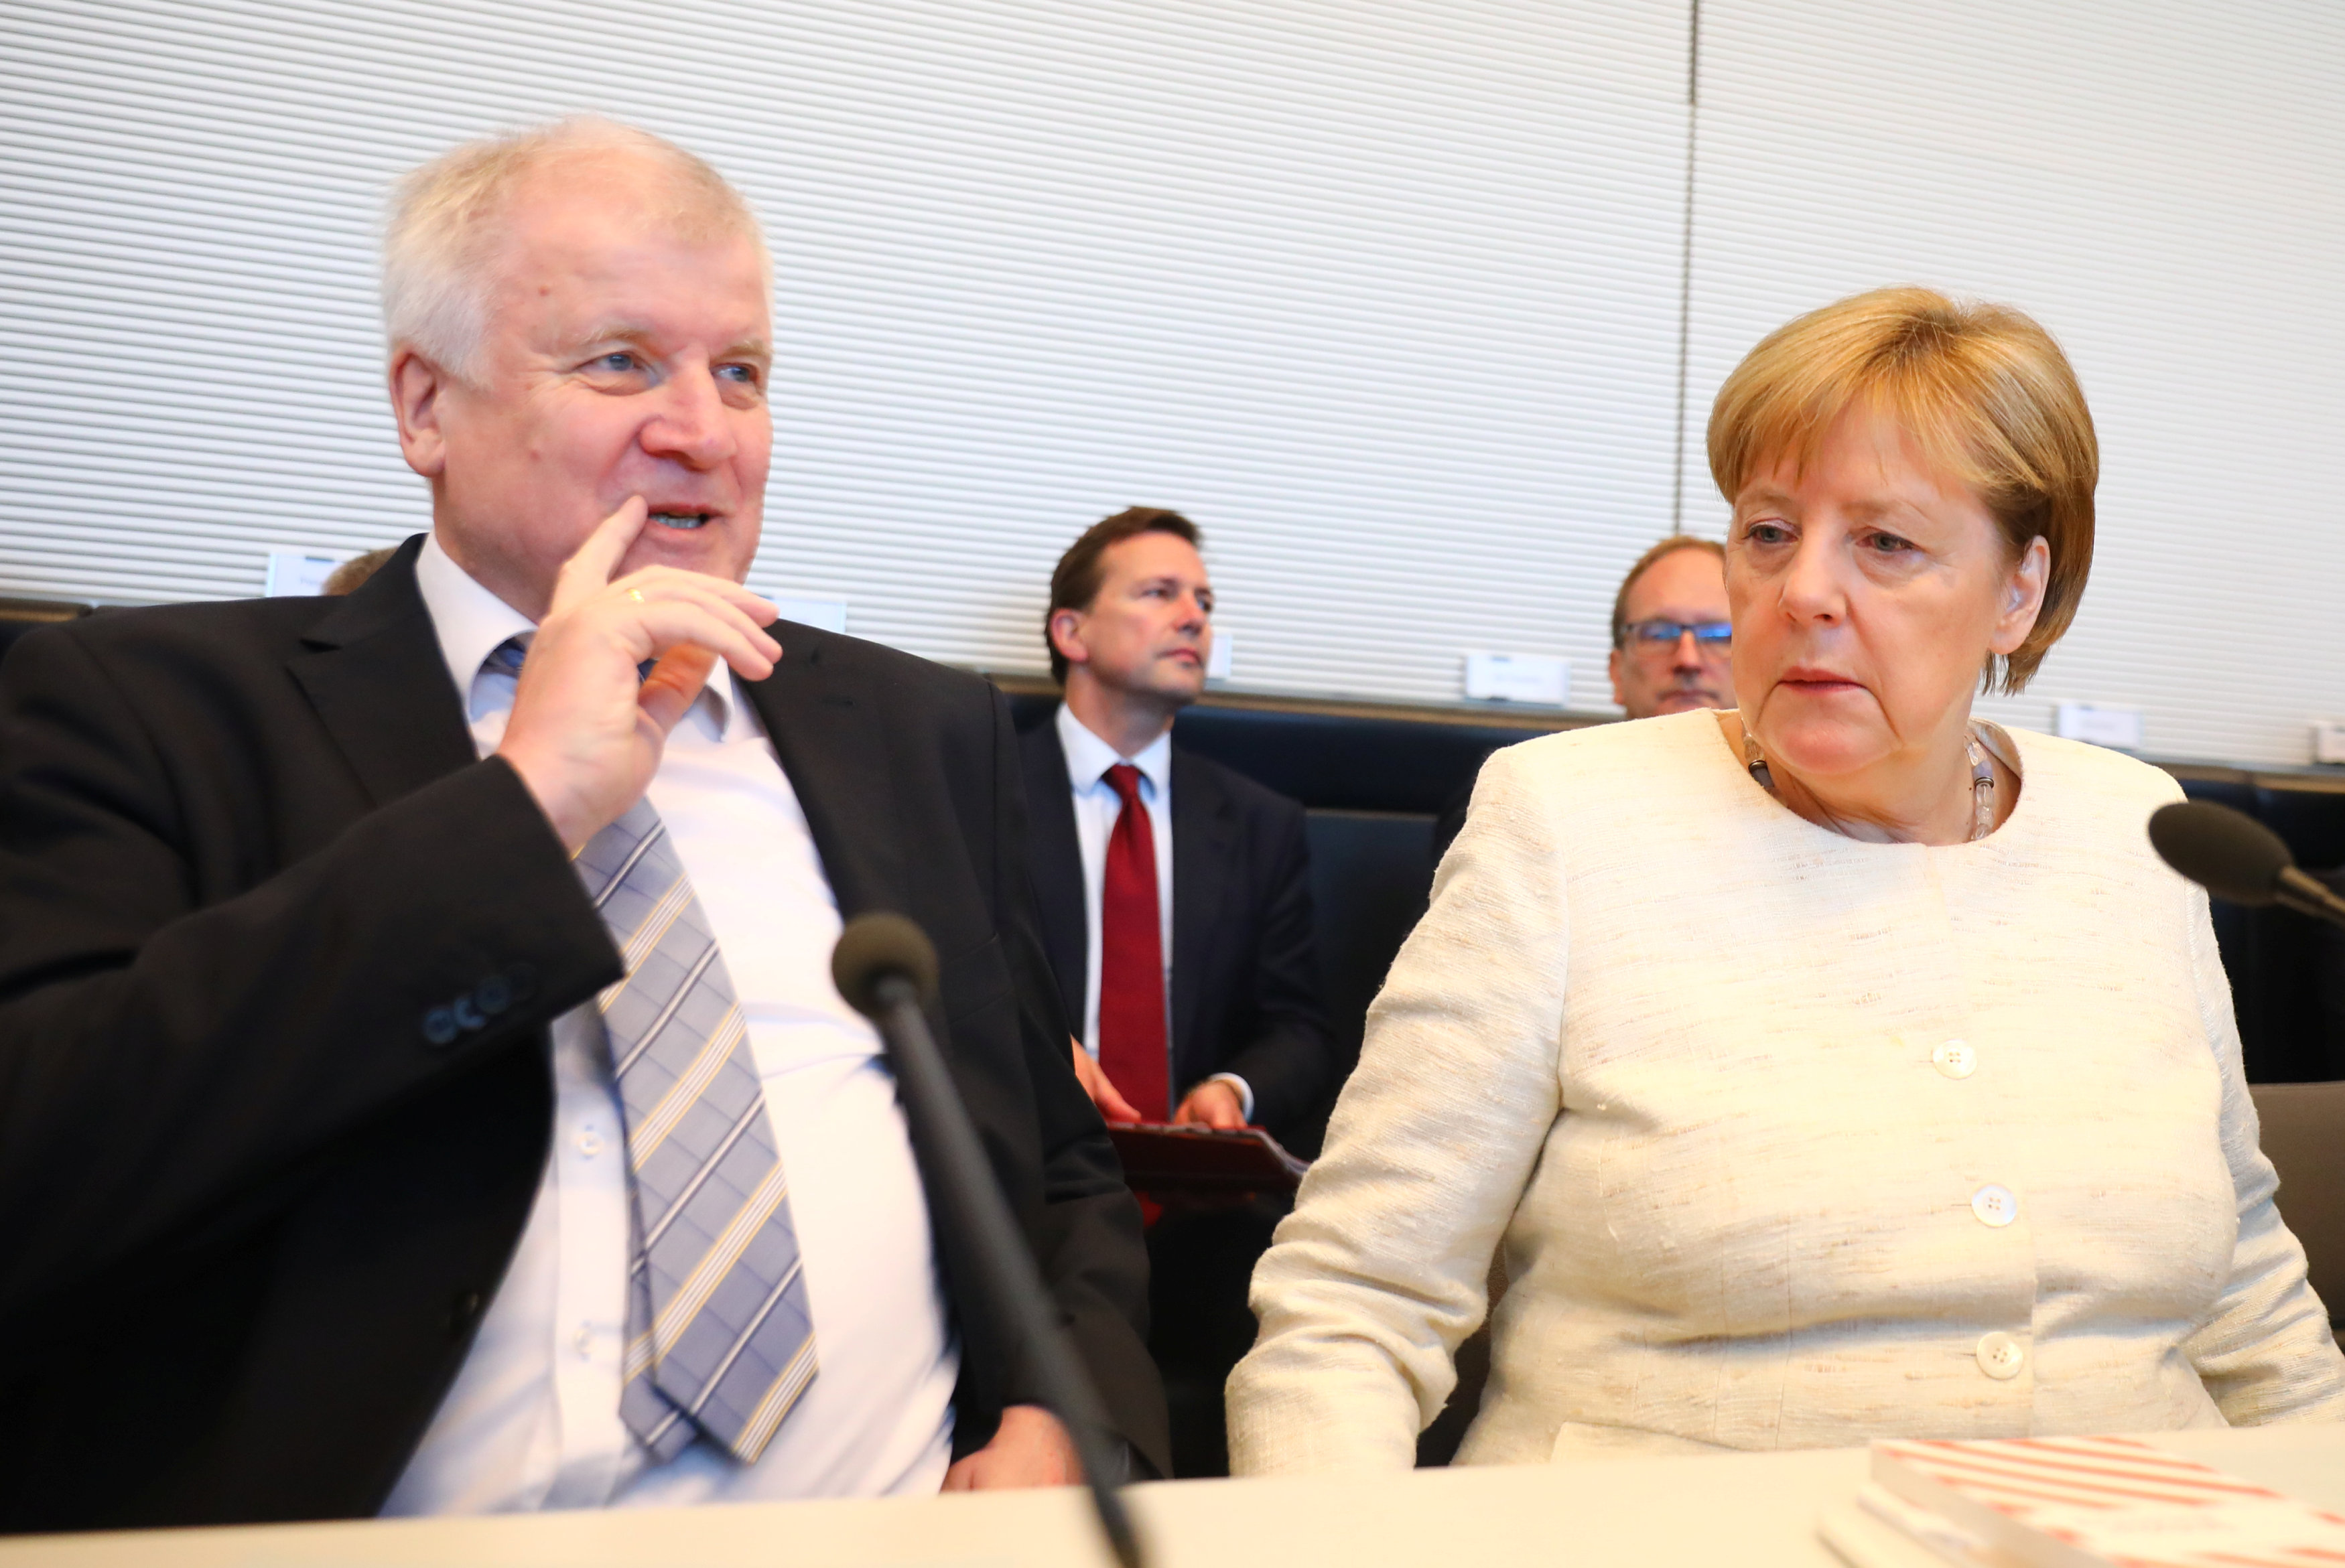 Γερμανία: Αποσοβήθηκε η πολιτική κρίση- Η Μέρκελ έσωσε την κυβέρνησή της, αλλά παραμένει ευάλωτη